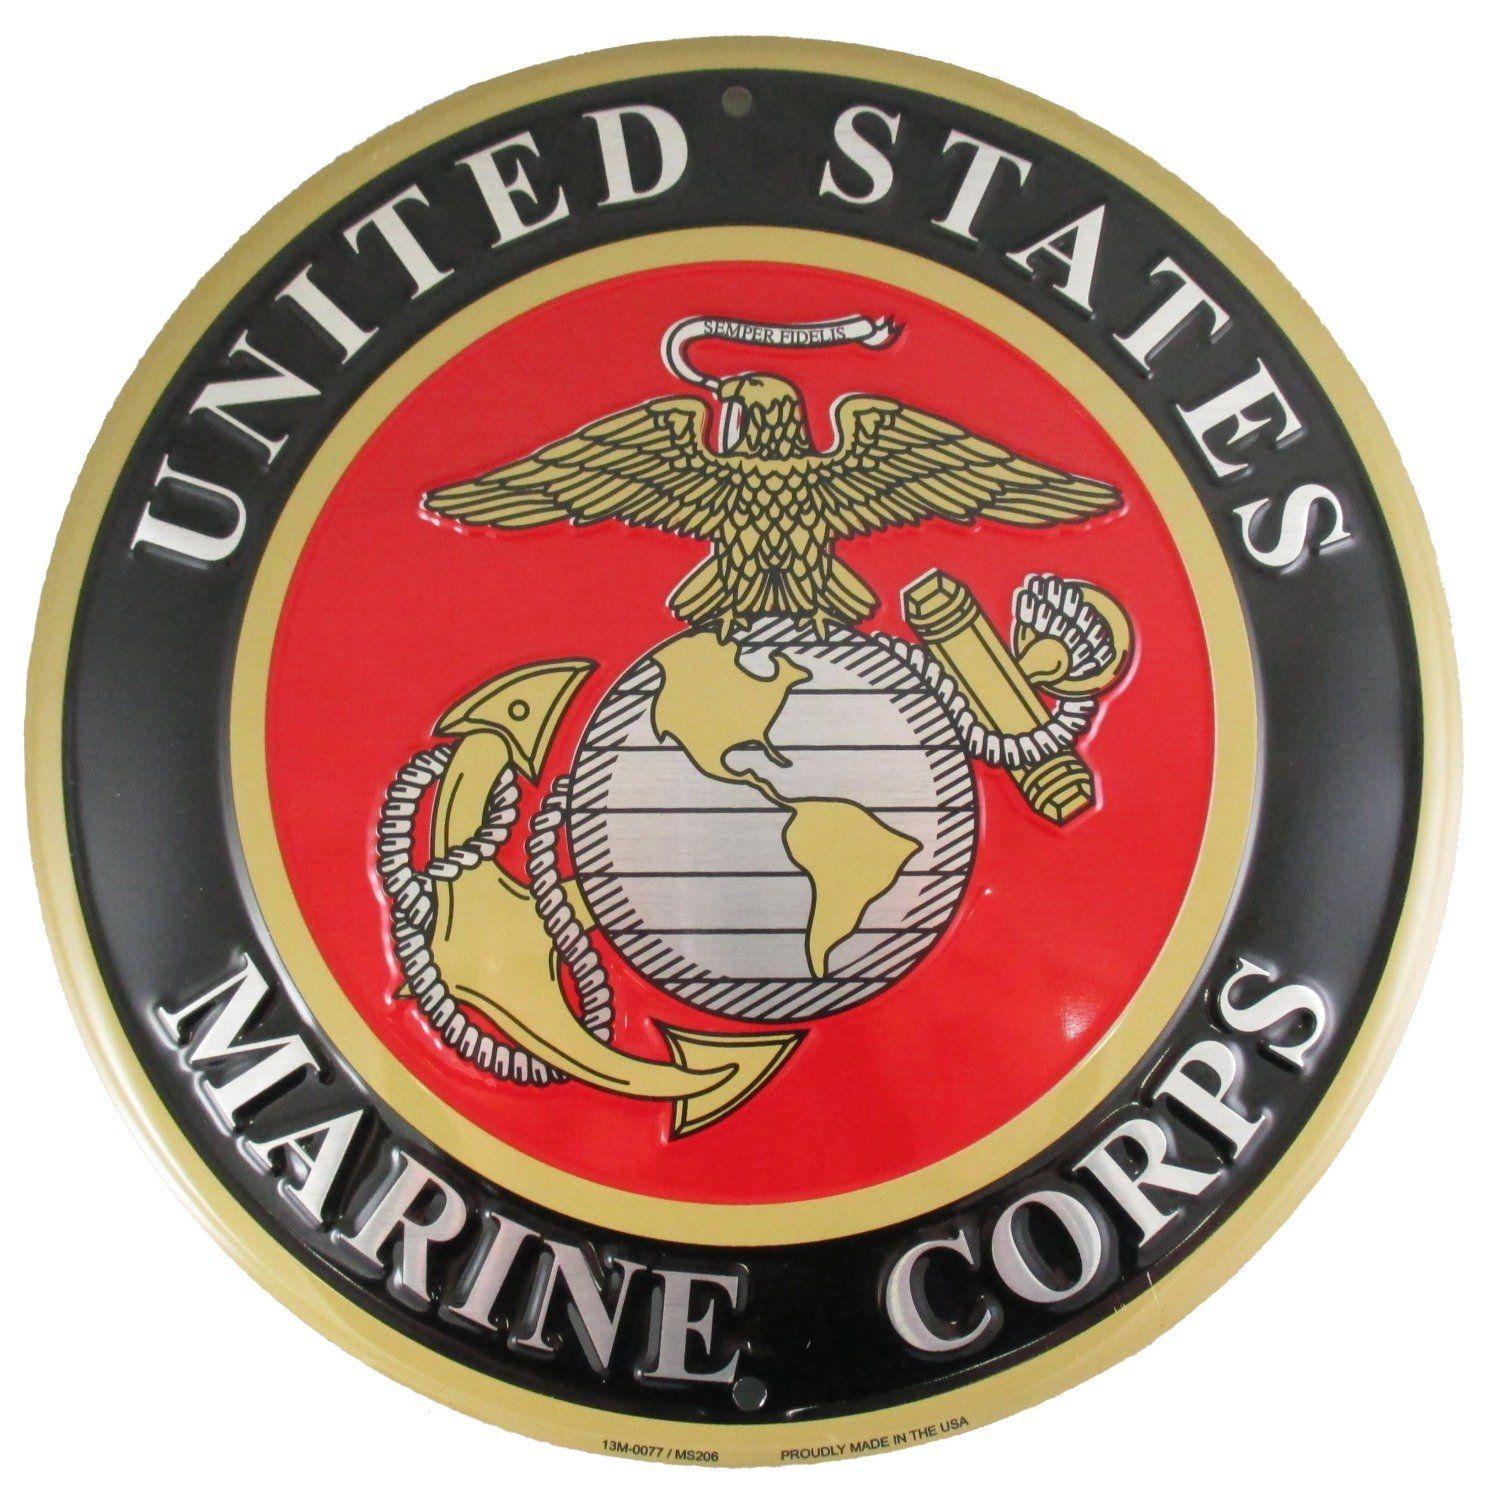 The Corps Logo - Amazon.com: United States Marines Emblem Metal Sign - US Marine ...